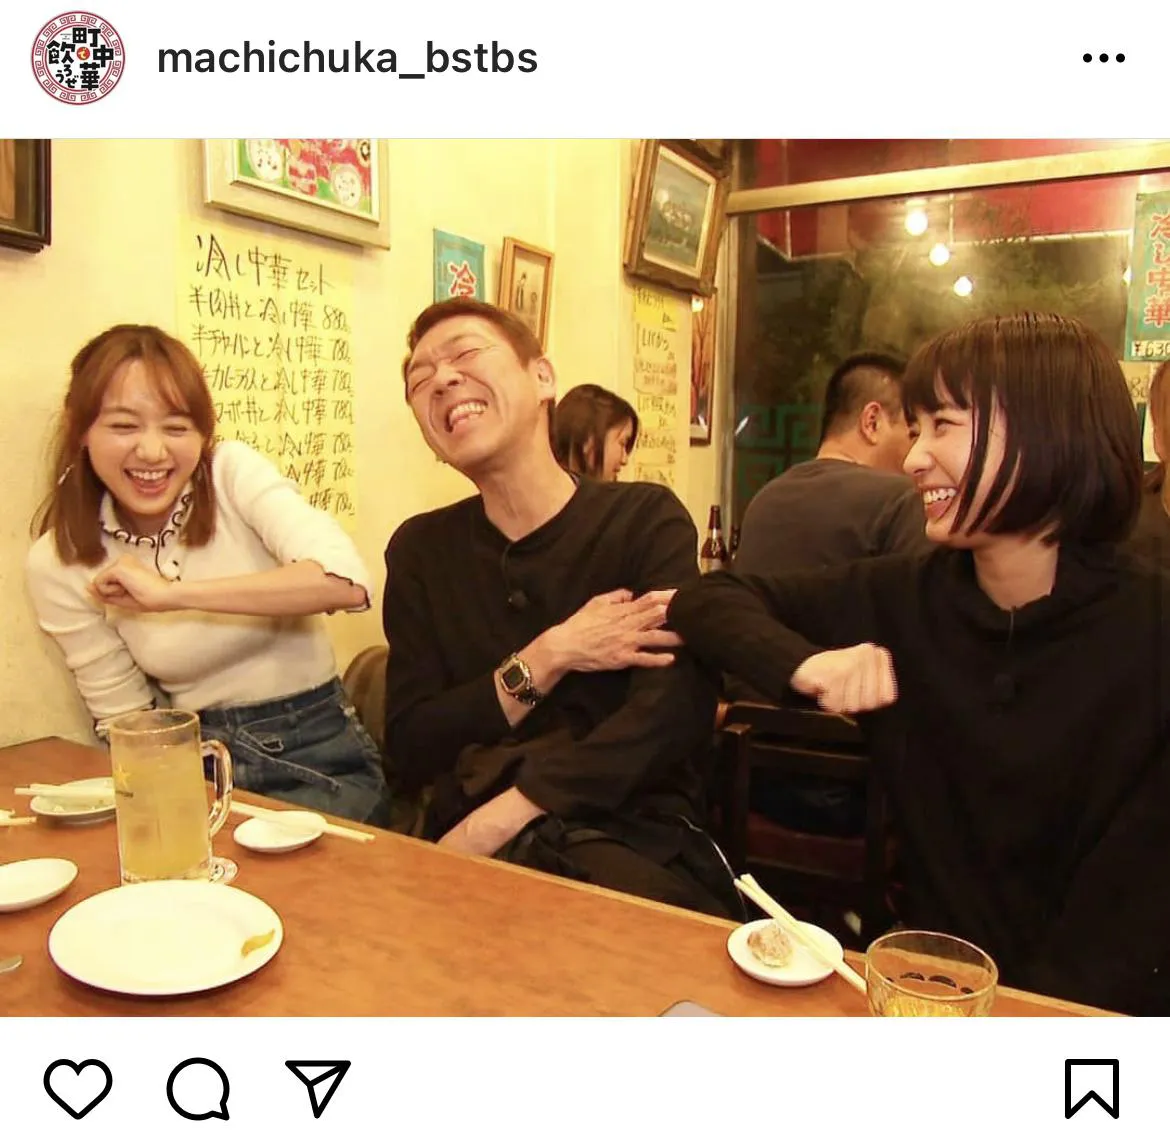 ※画像はBS-TBS 町中華で飲ろうぜ(machichuka_bstbs)公式Instagramのスクリーンショット